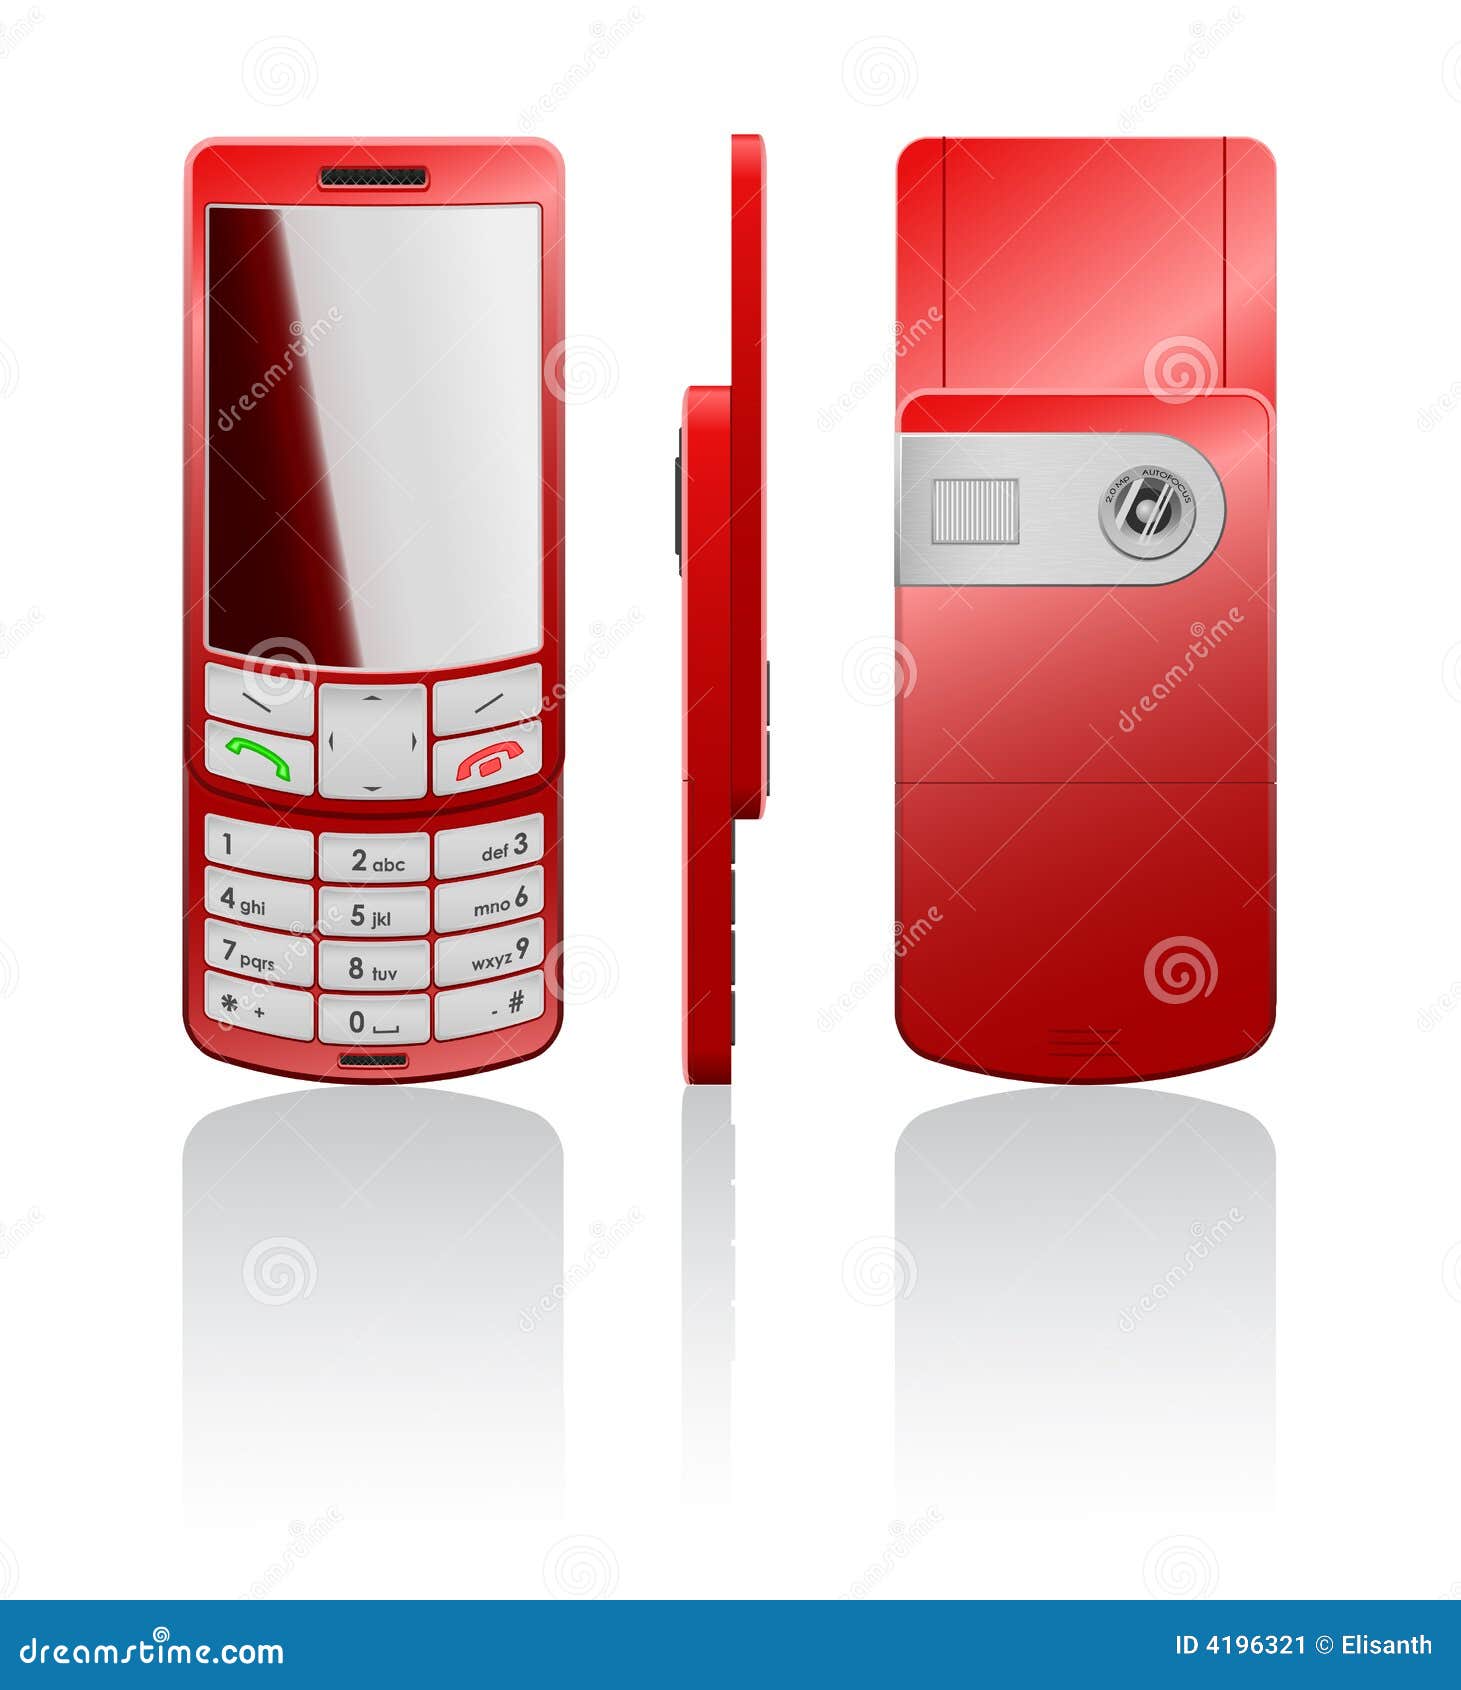 Vector illustratie van een rode cellphone. De vector photorealistic illustratie van een rode cellphone-schuif met witte knopen, opent